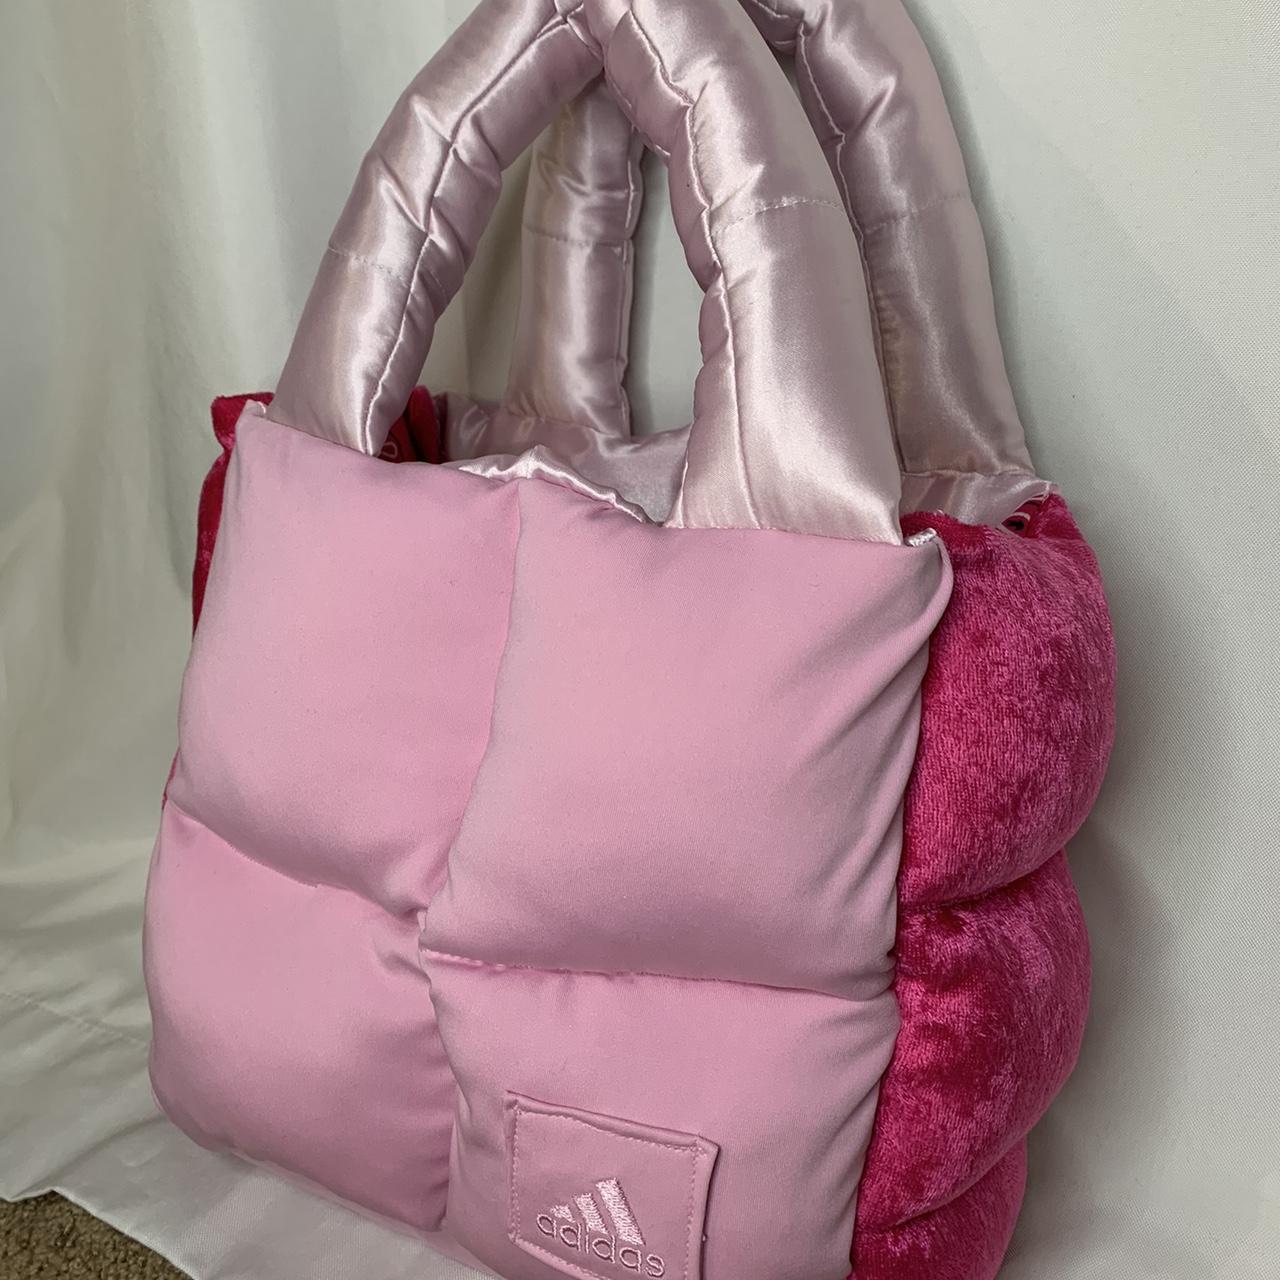 Adidas Women's Pink Bag (2)